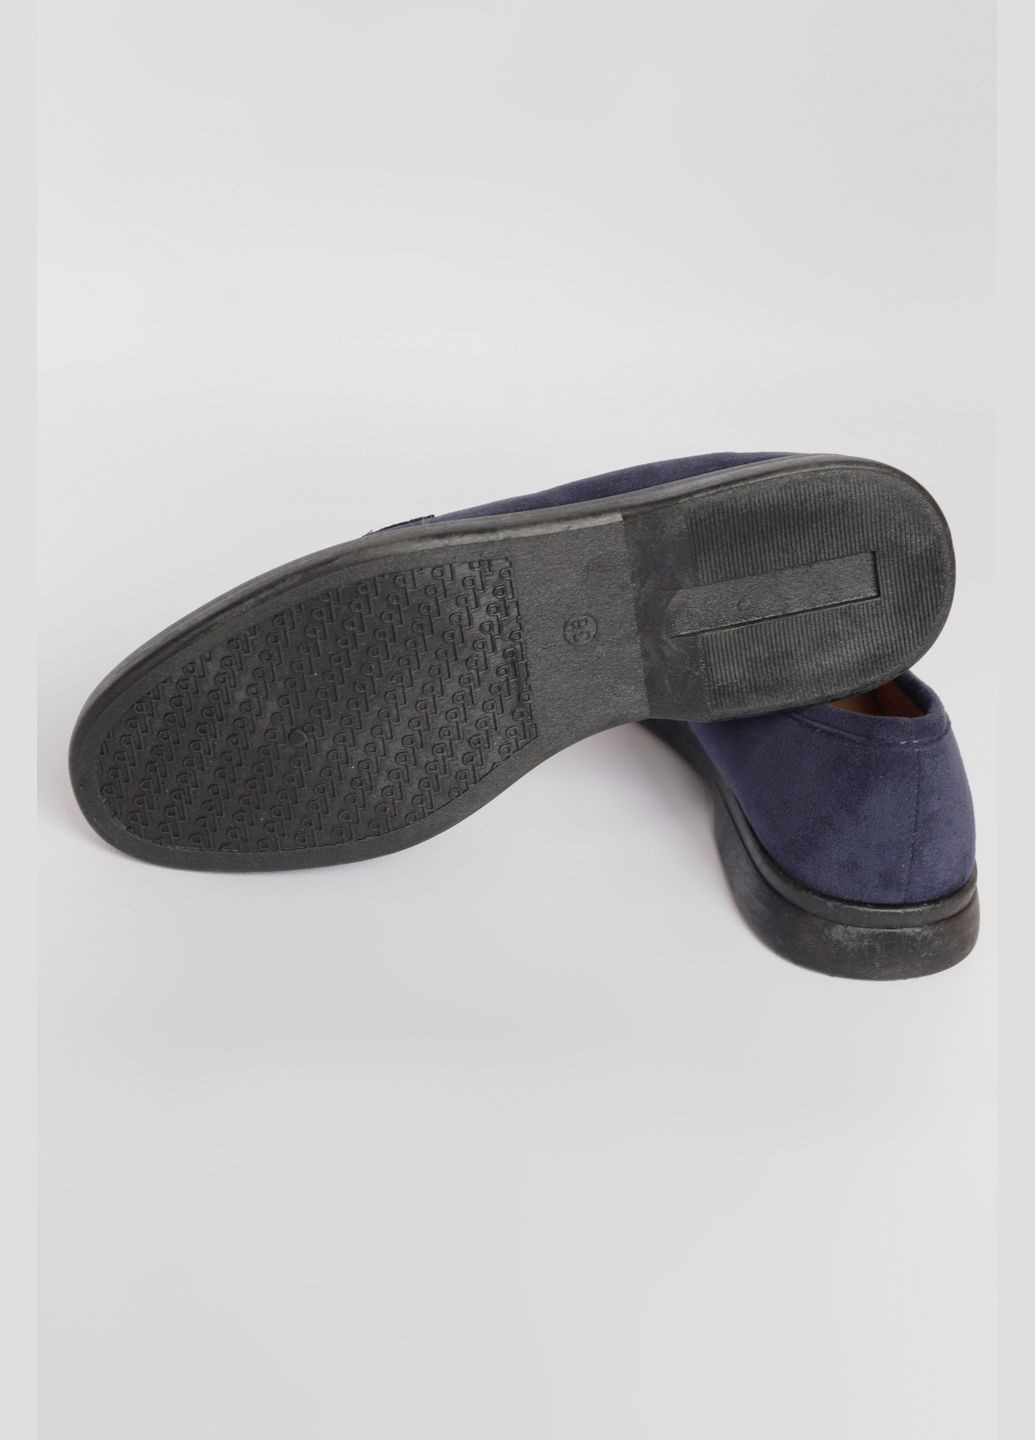 Туфли-лоферы женские темно-синего цвета Let's Shop с цепочками